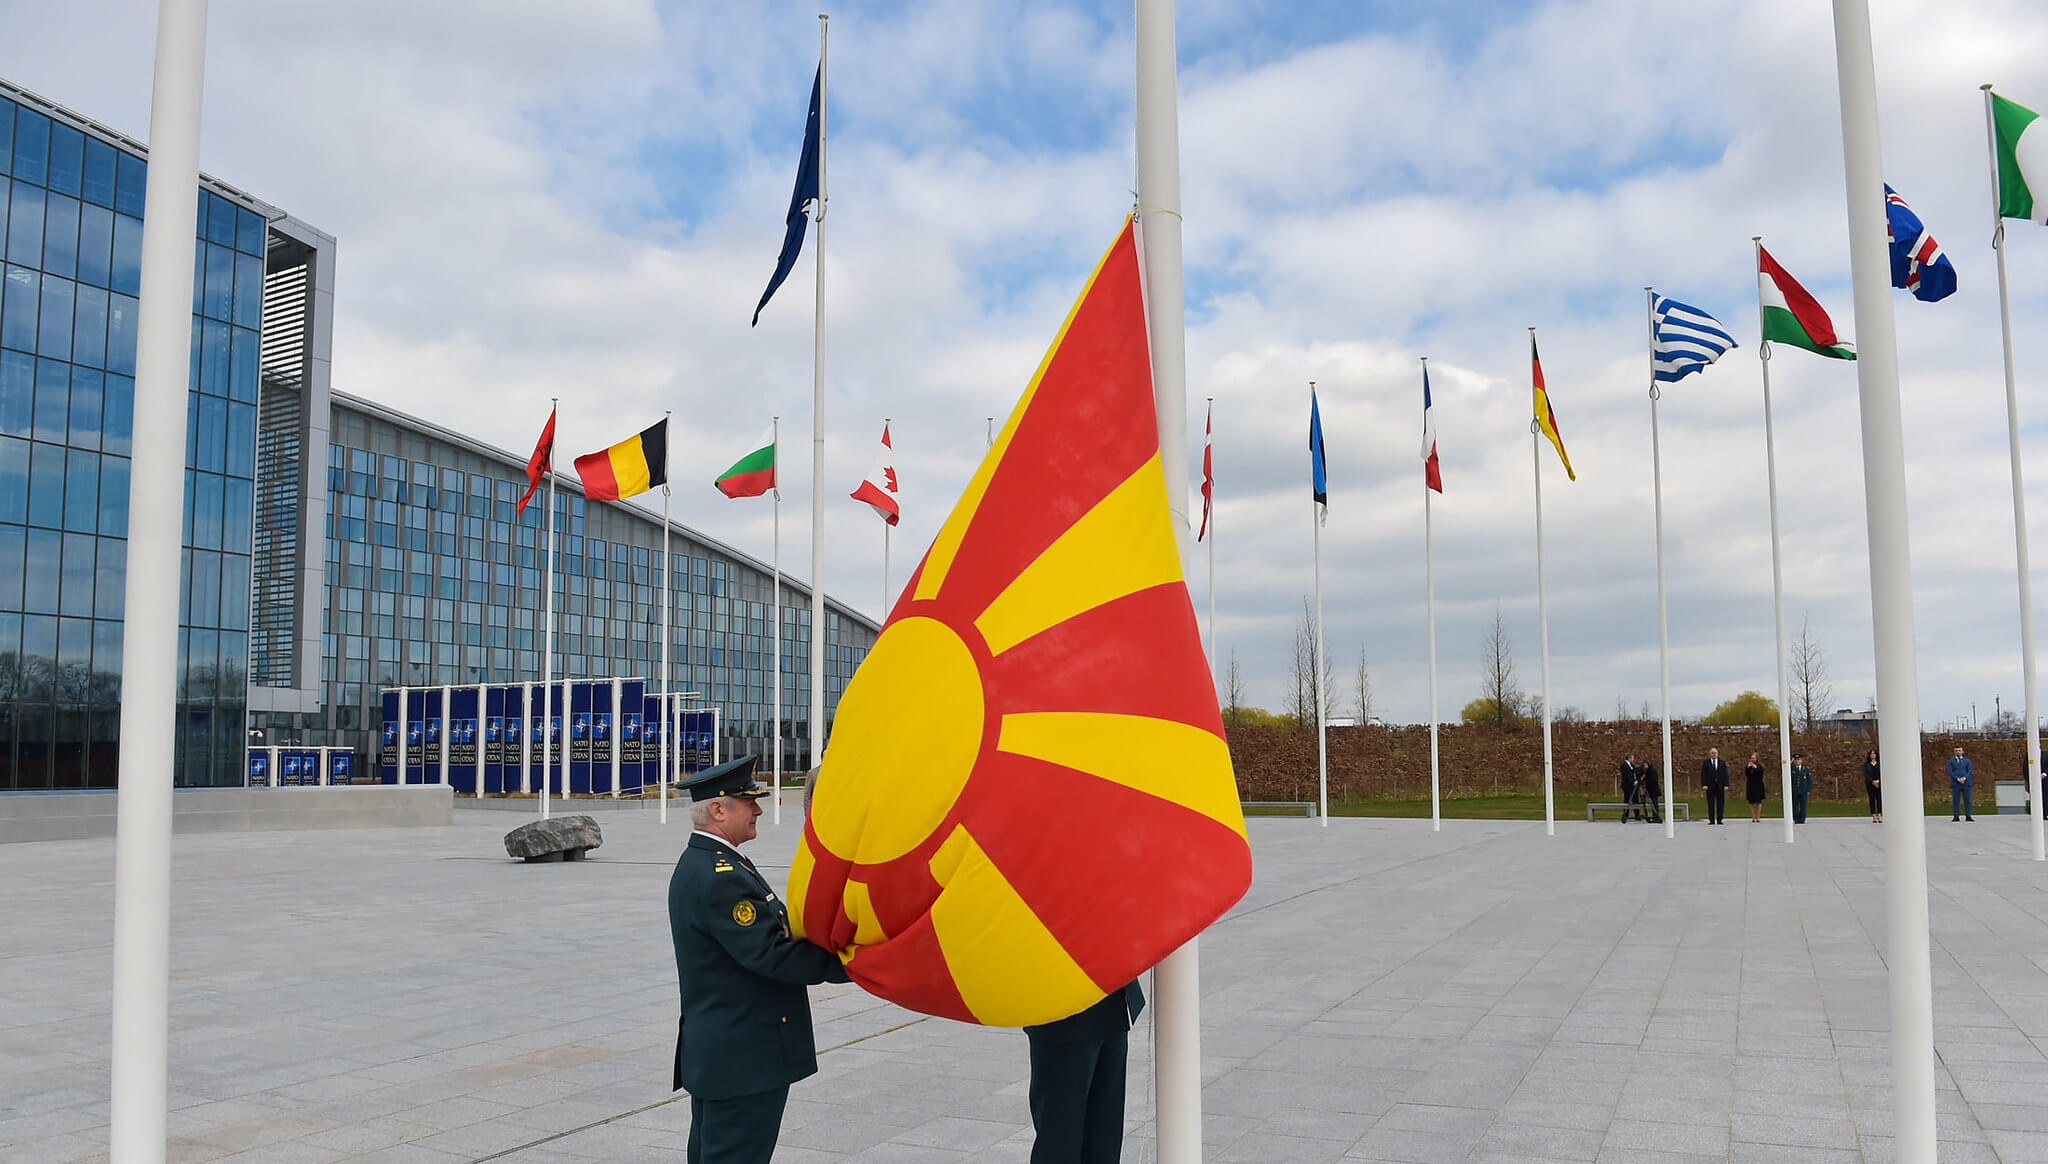 Popovikj-art-Ceremony marking the accession to NATO of the Republic of North Macedonia in 2020. NATO